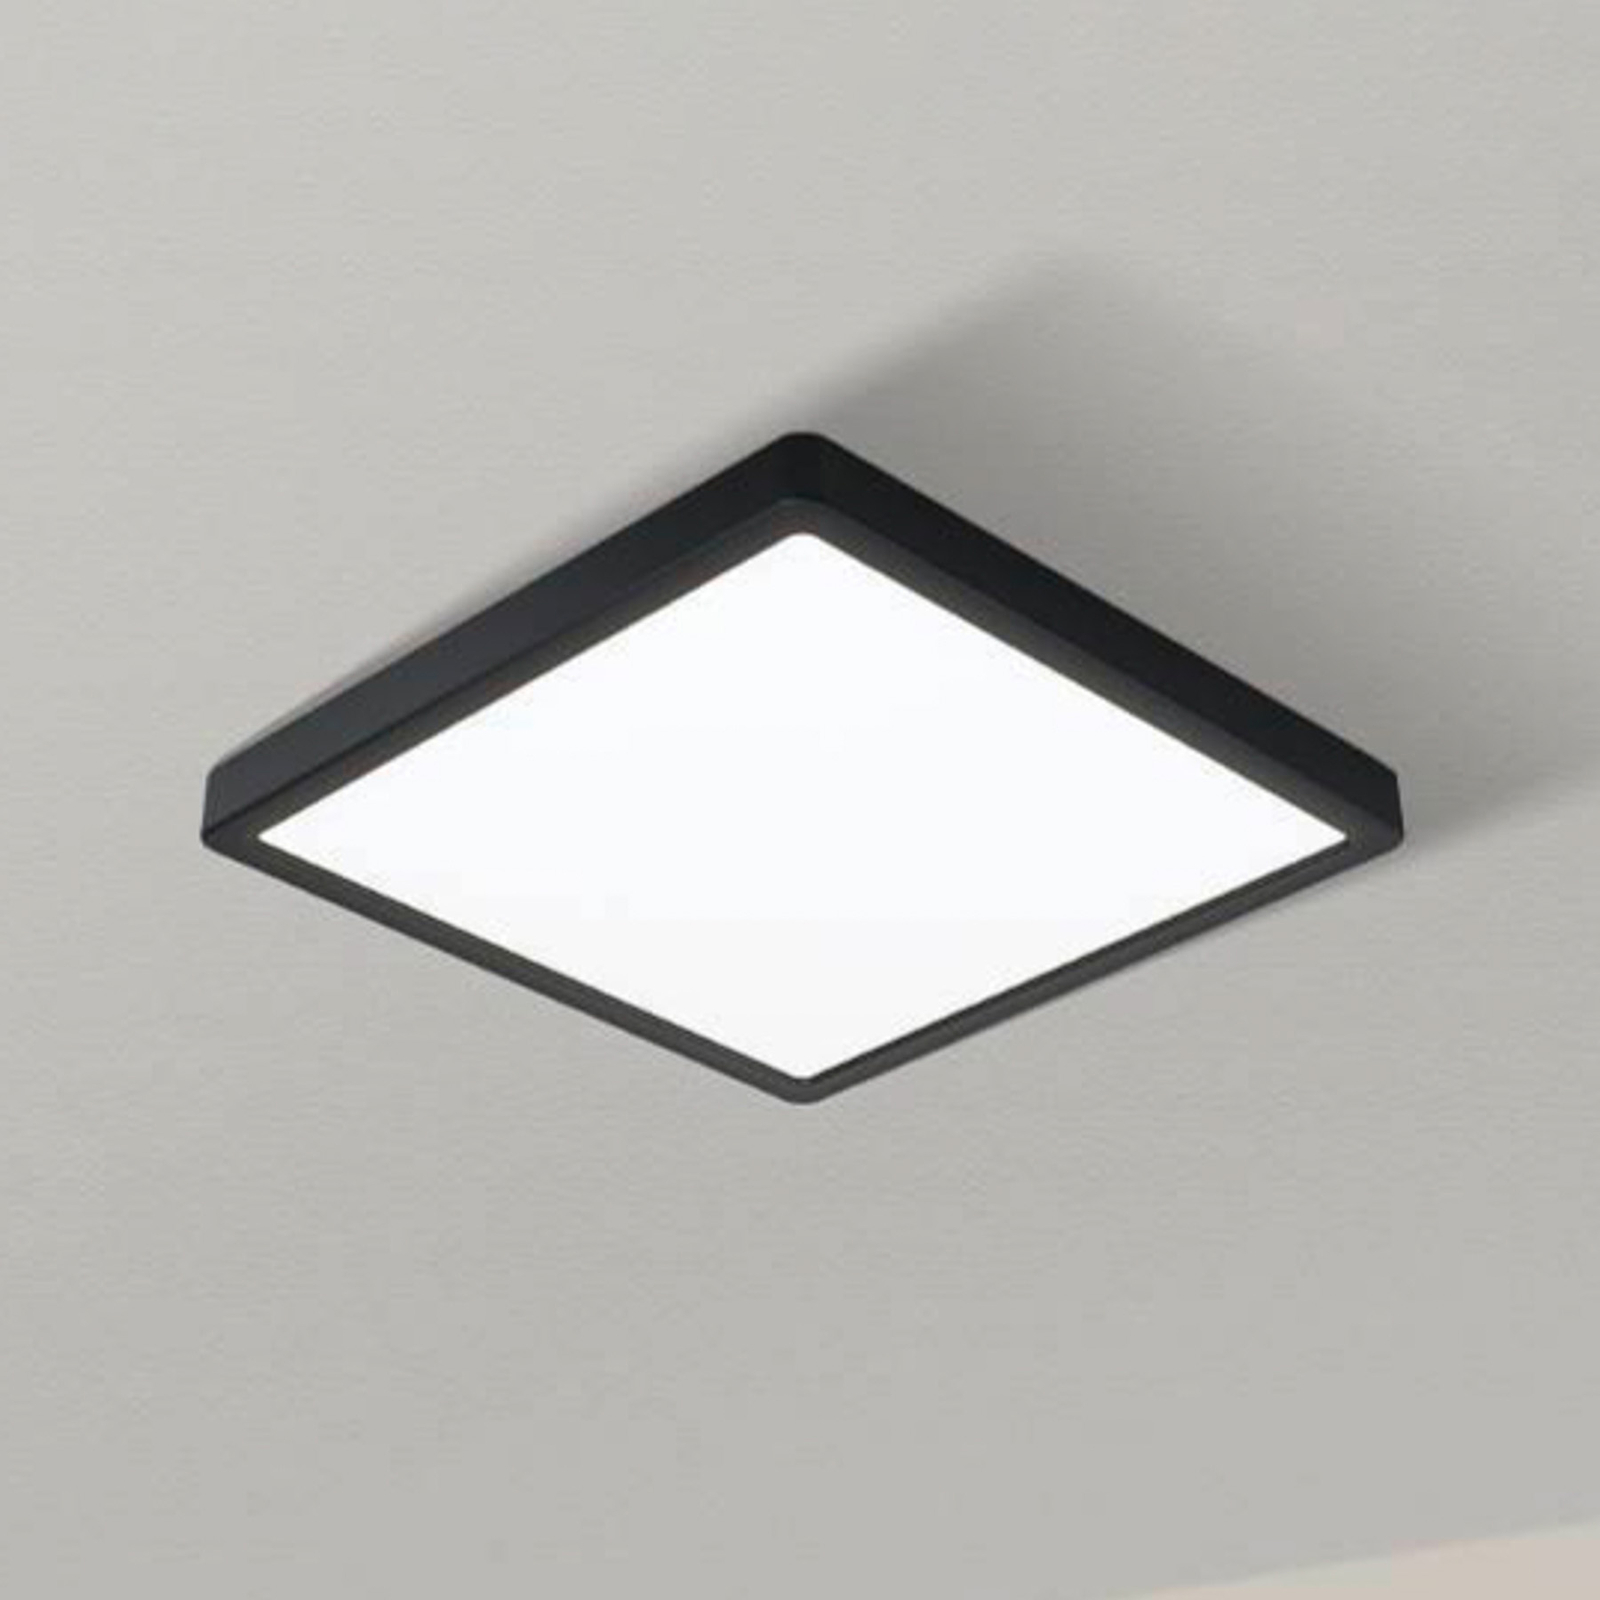 LED-Deckenlampe Fueva 5, IP20 schwarz 21x21cm